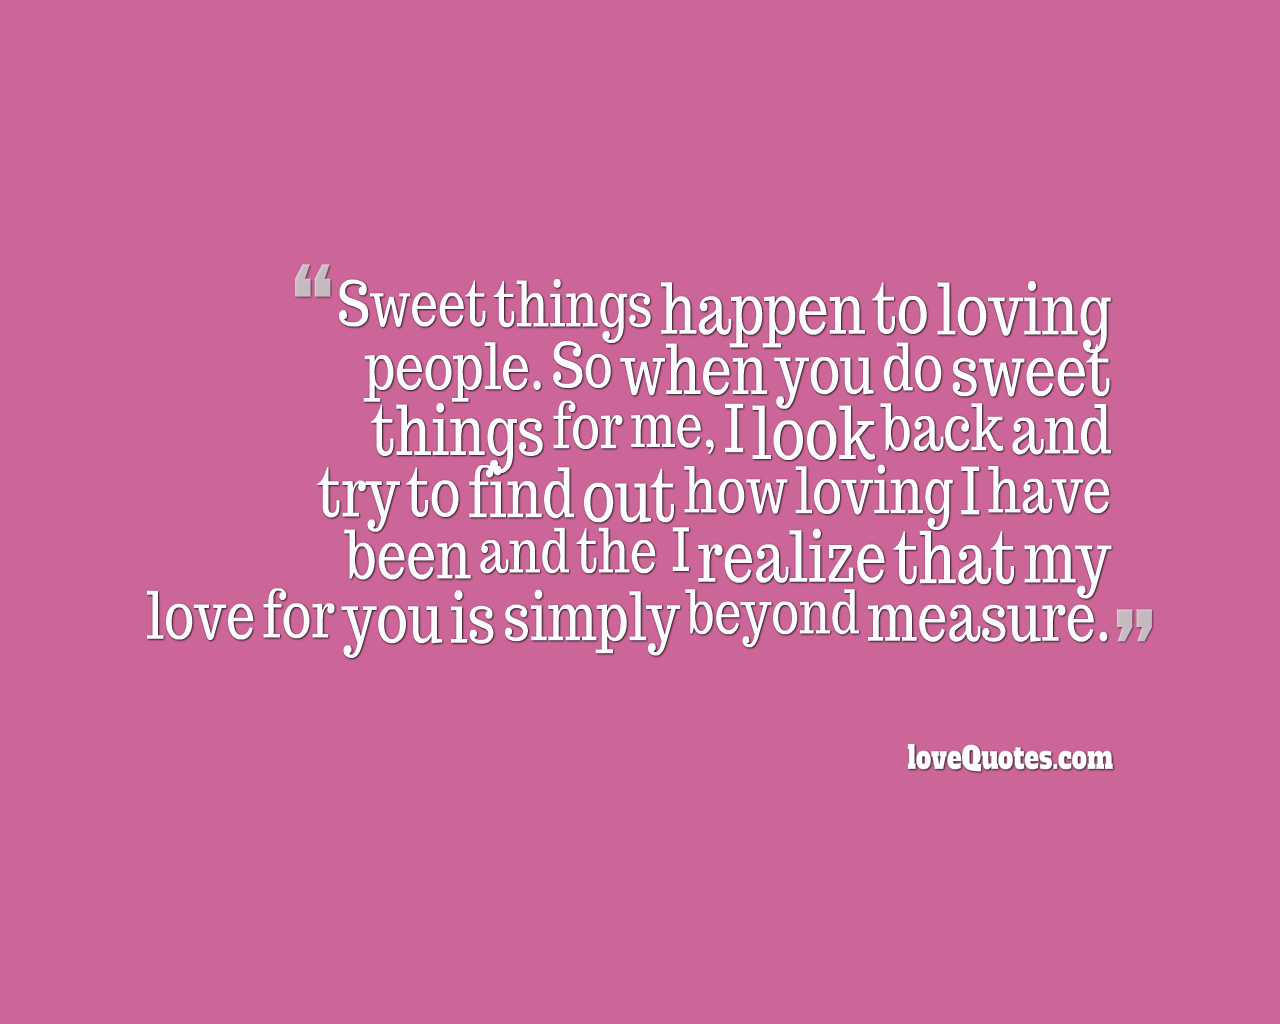 My Love Is Beyond Measure